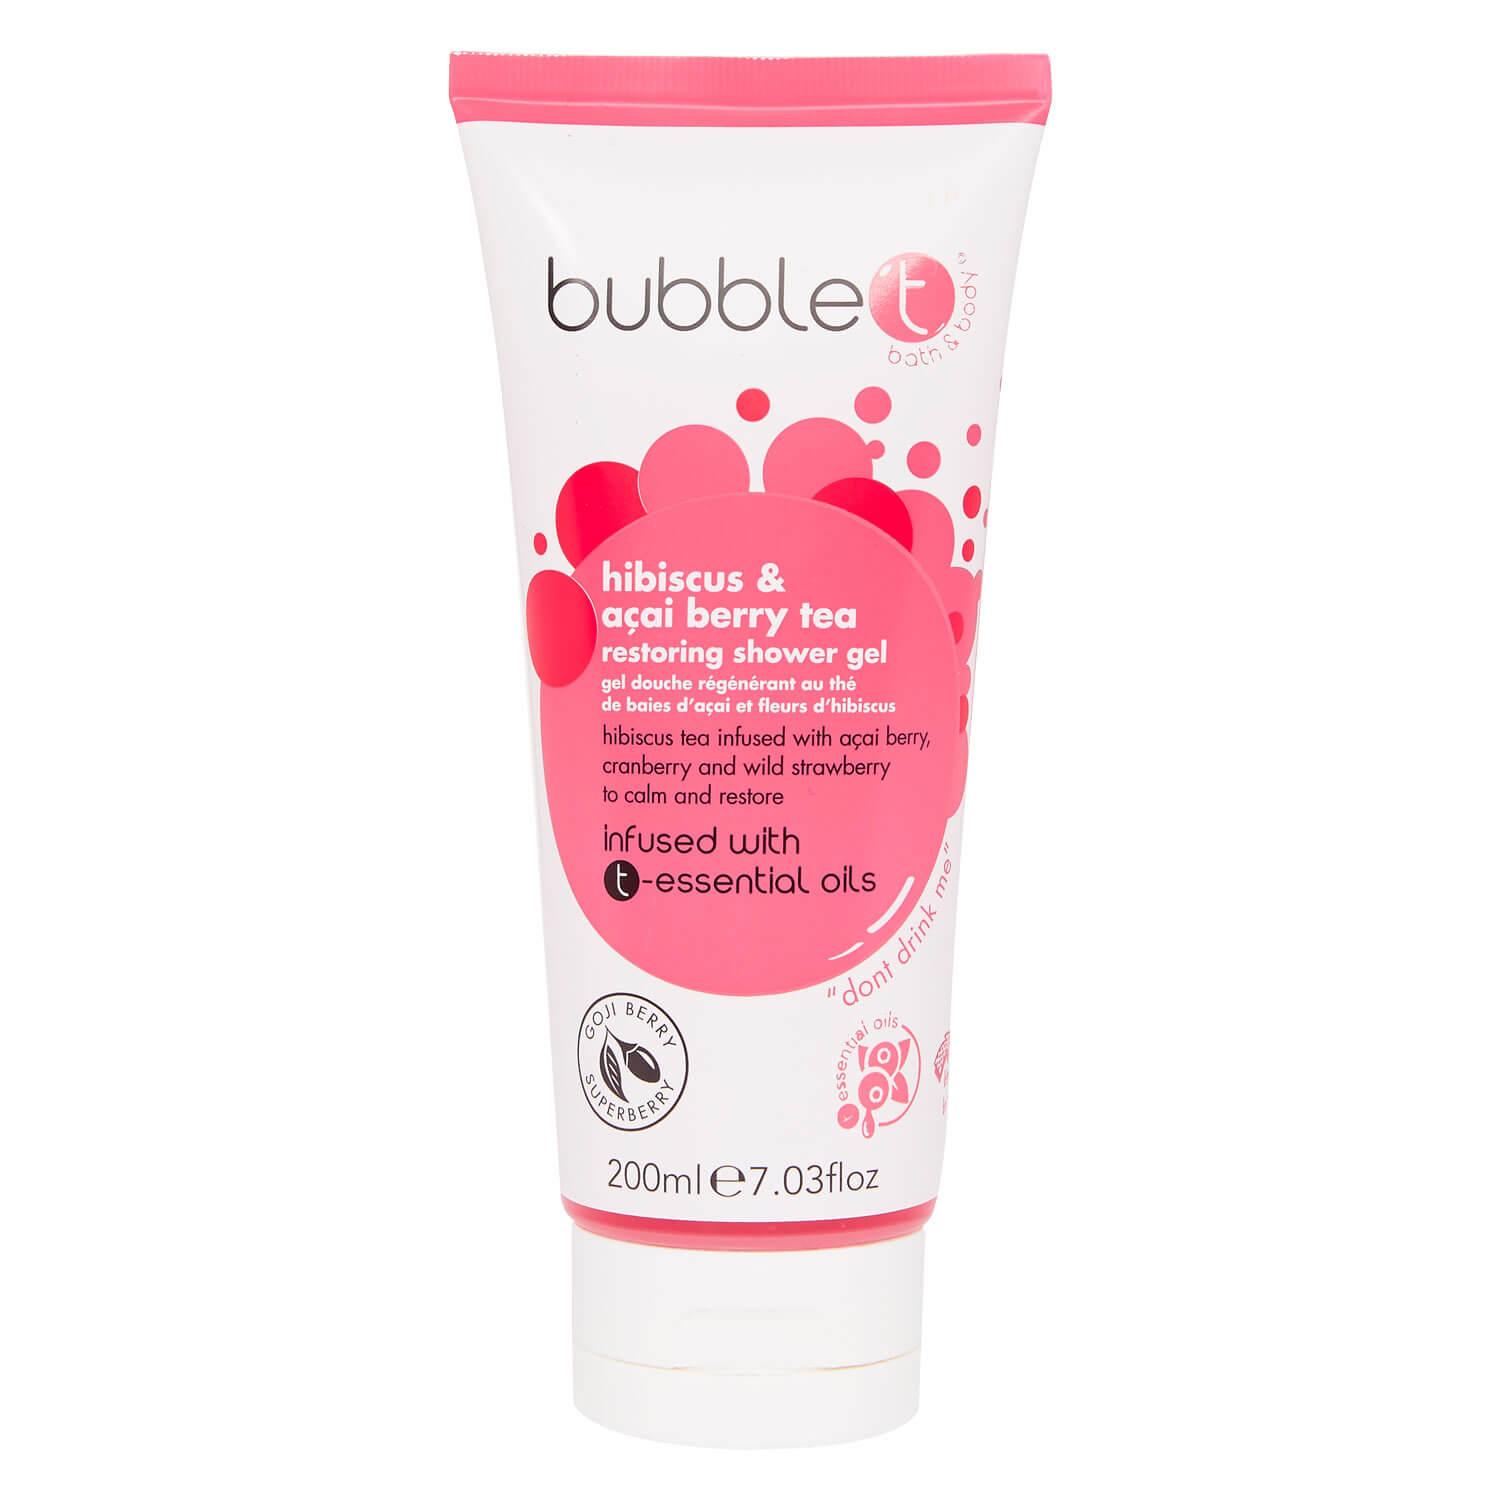 bubble t - Hibiscus & Açai Berry Tea Restoring Shower Gel